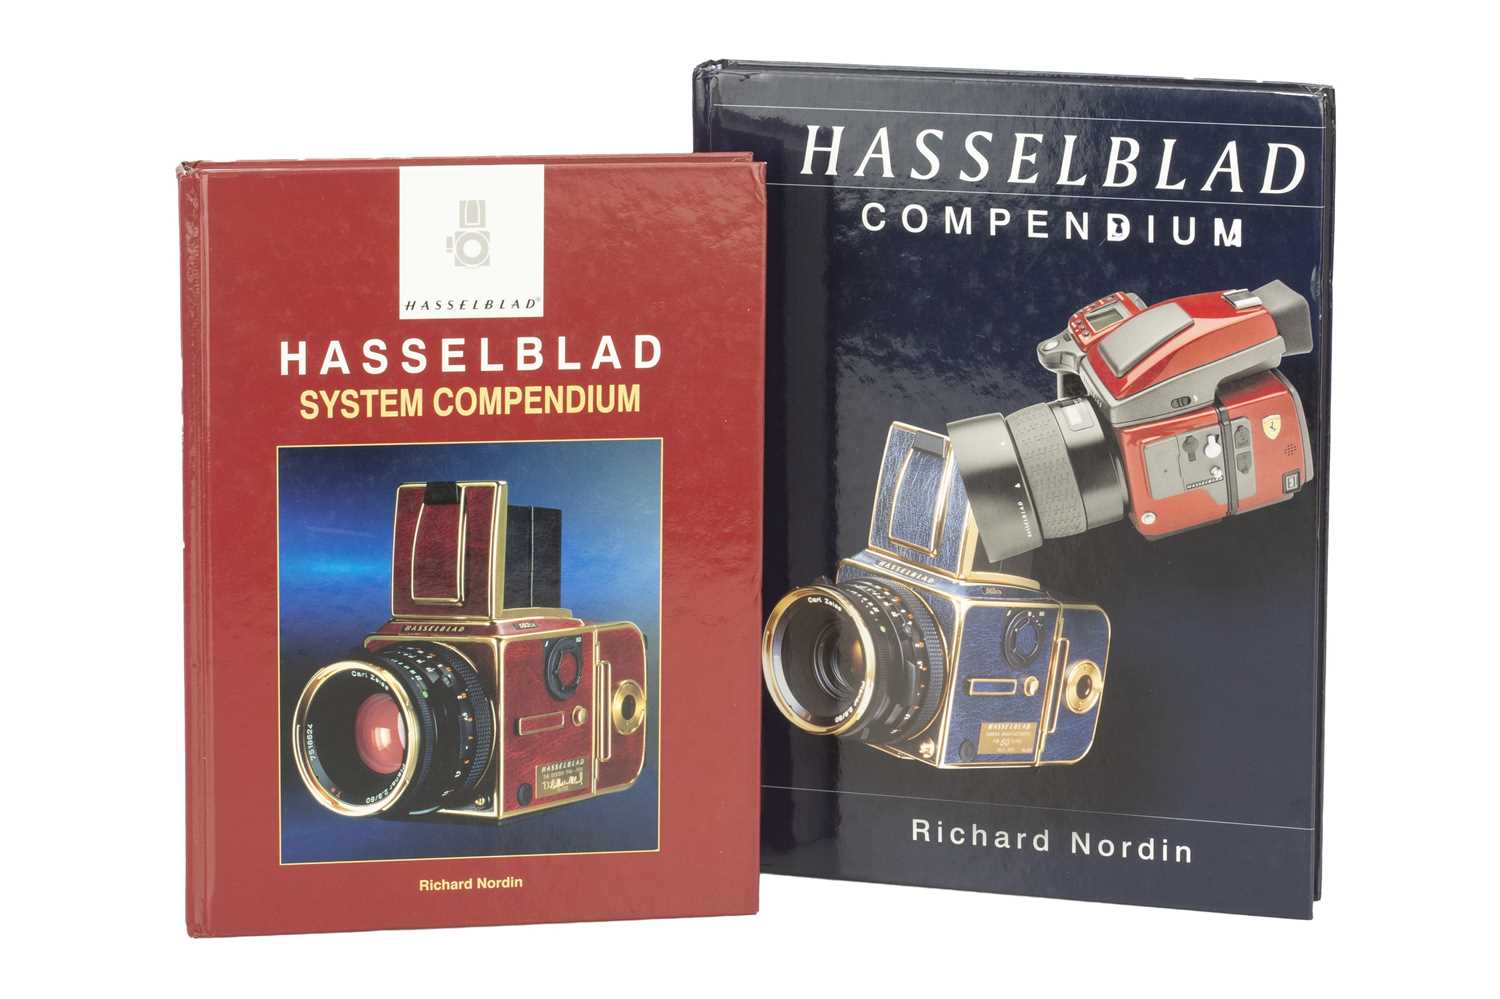 Hasselblad System Compendium 《洋書・カメラ》 - 洋書